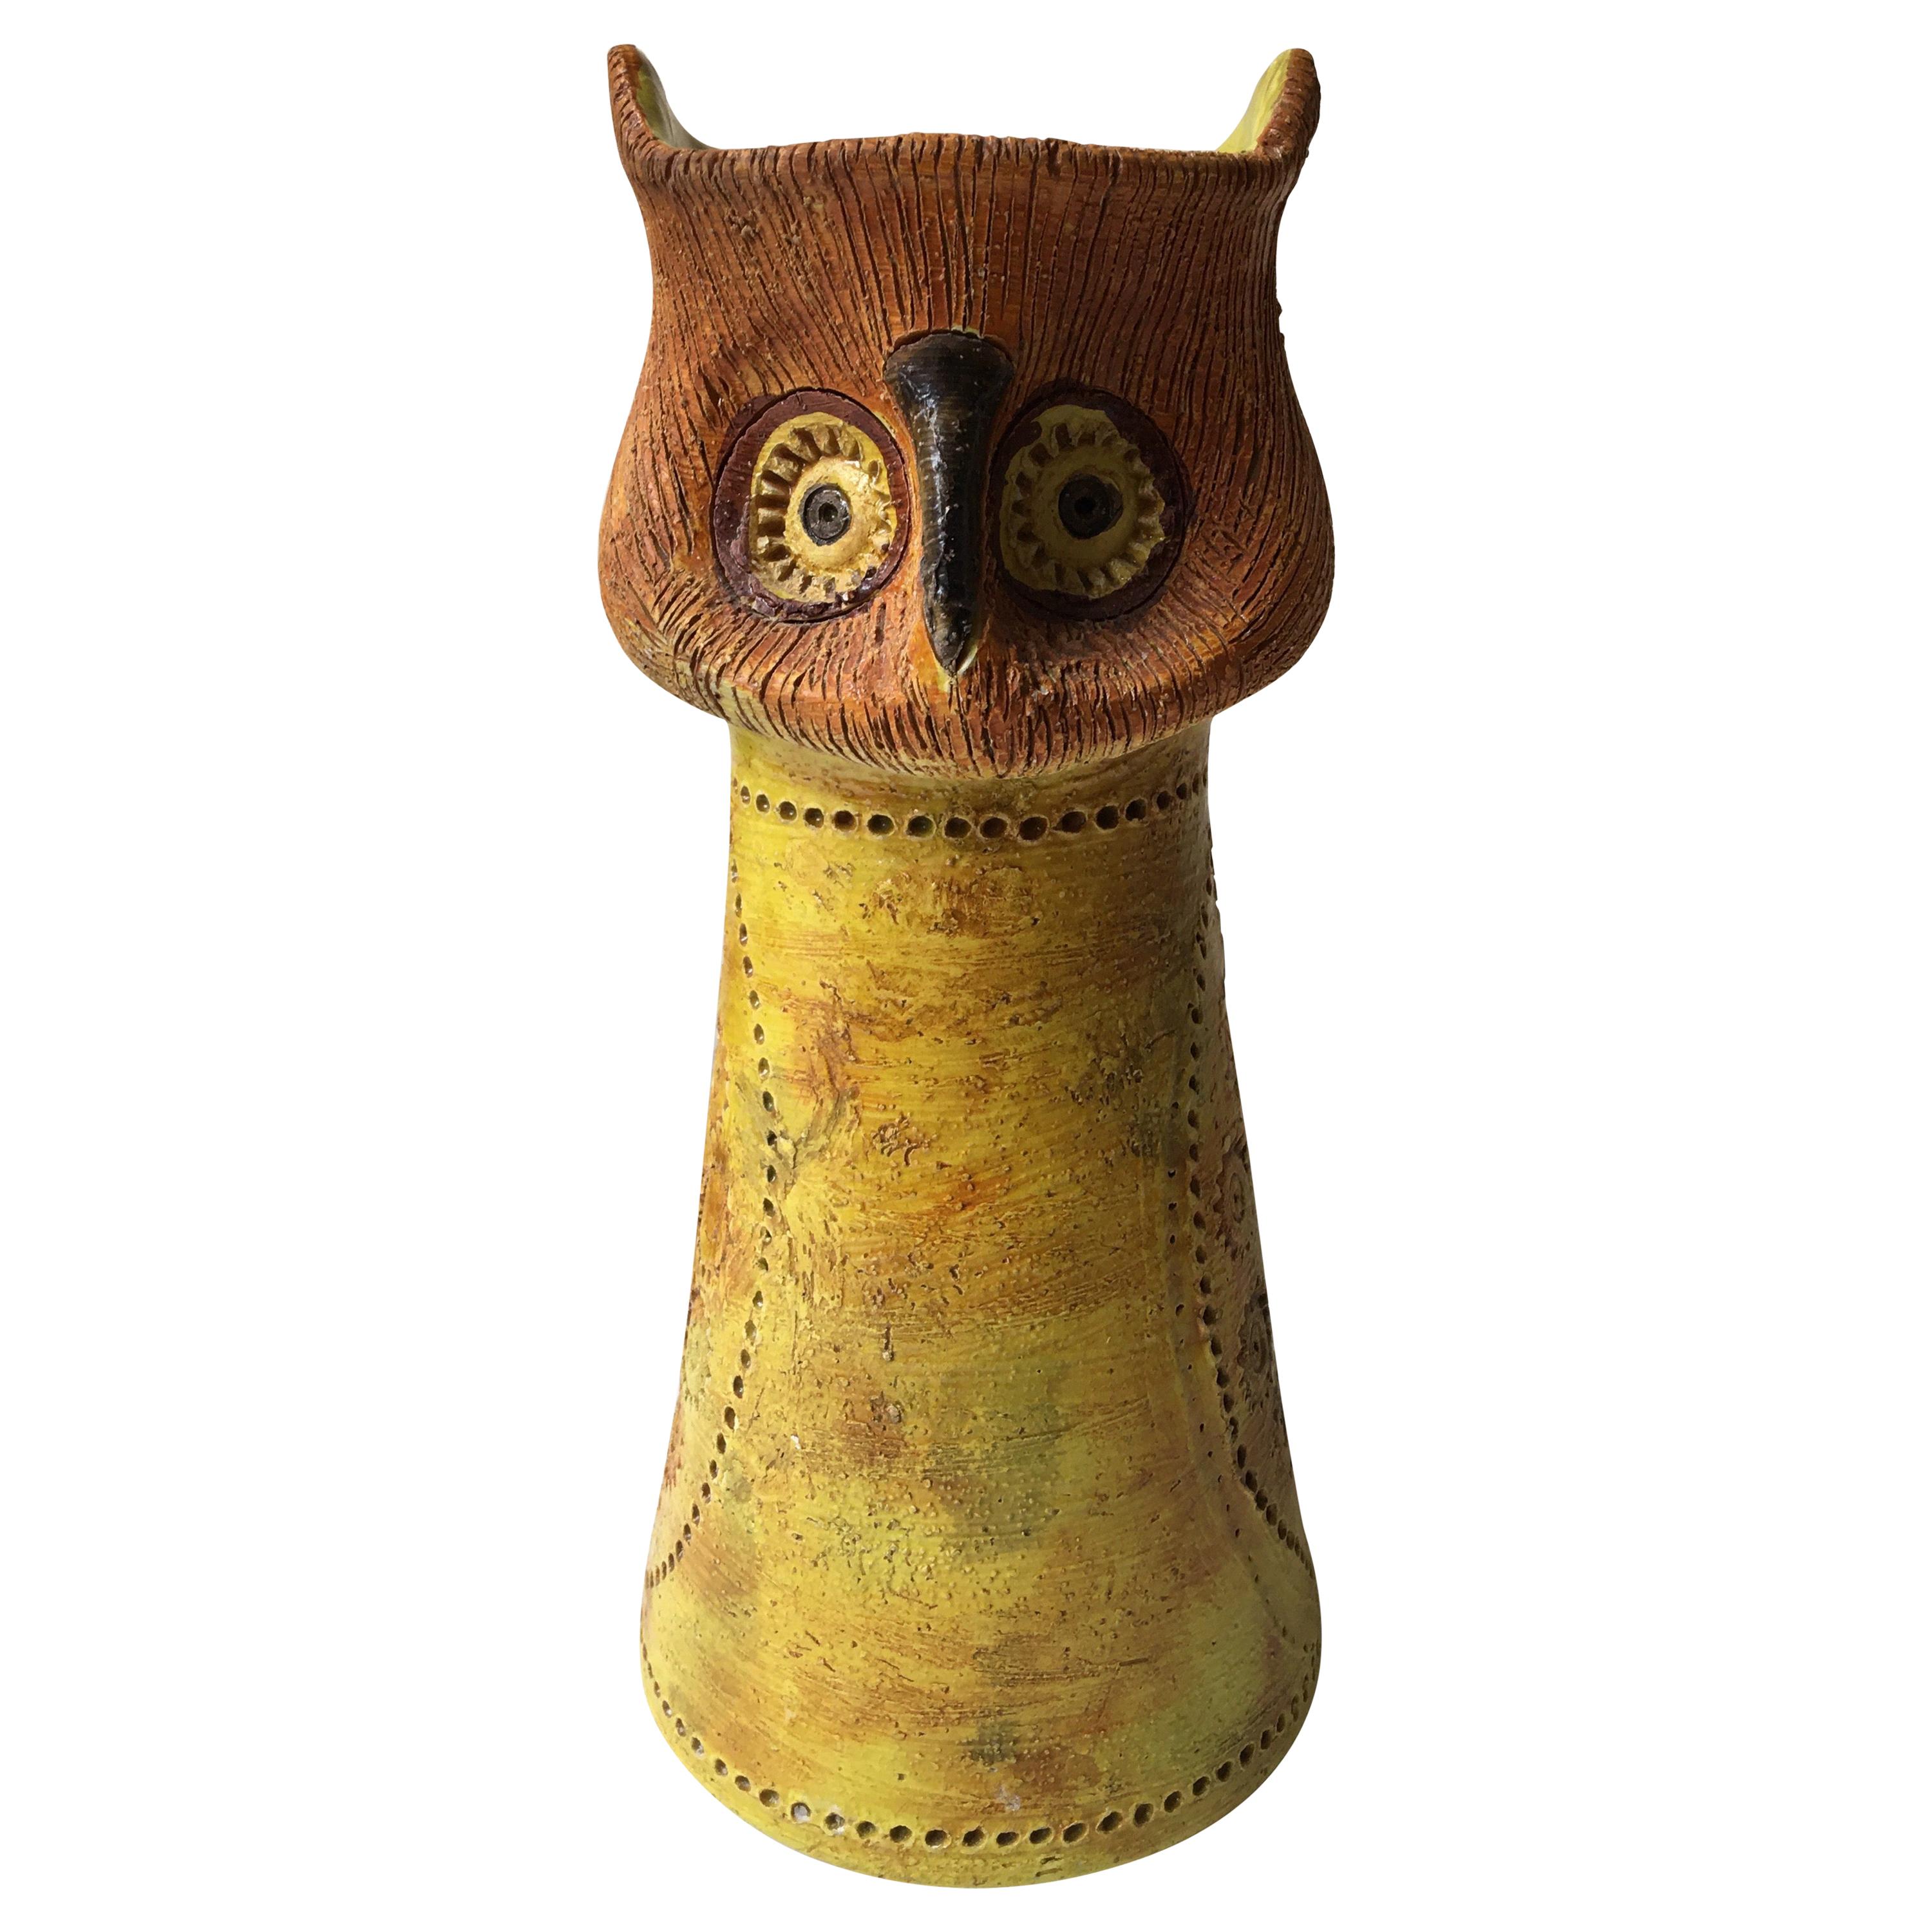 Aldo Londi for Bitossi Ceramic Owl  Rosenthal Netter